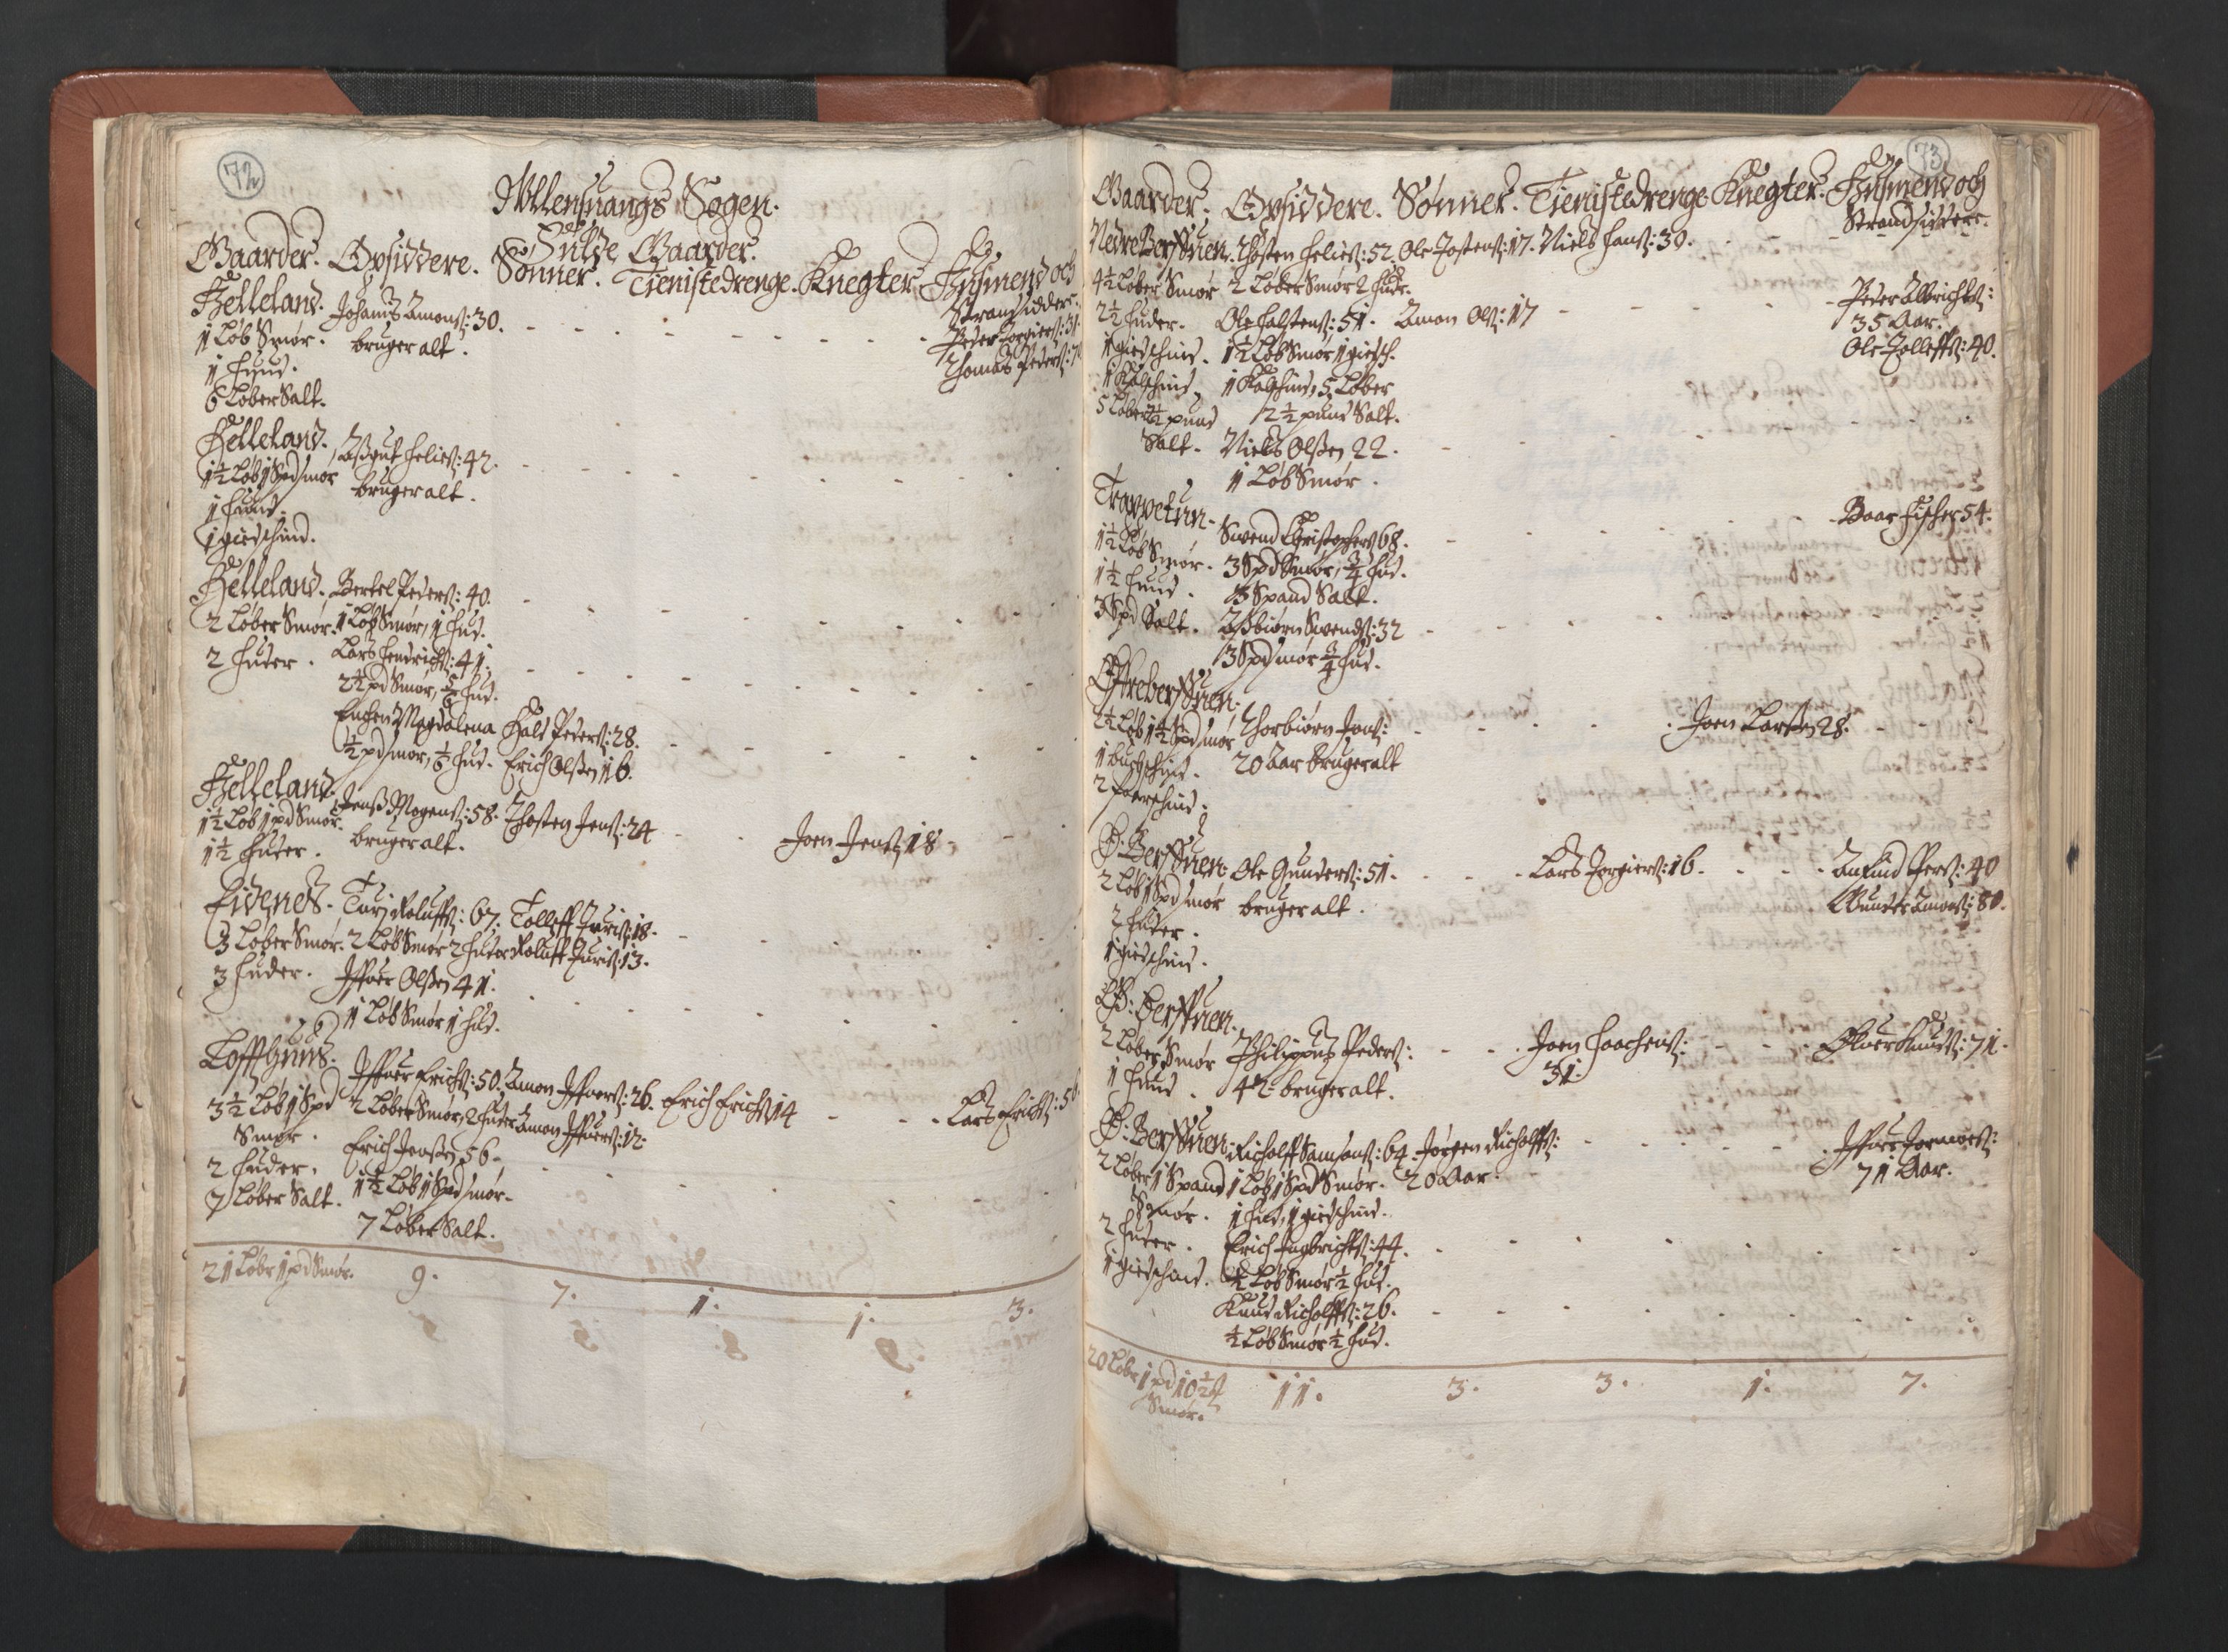 RA, Bailiff's Census 1664-1666, no. 14: Hardanger len, Ytre Sogn fogderi and Indre Sogn fogderi, 1664-1665, p. 72-73